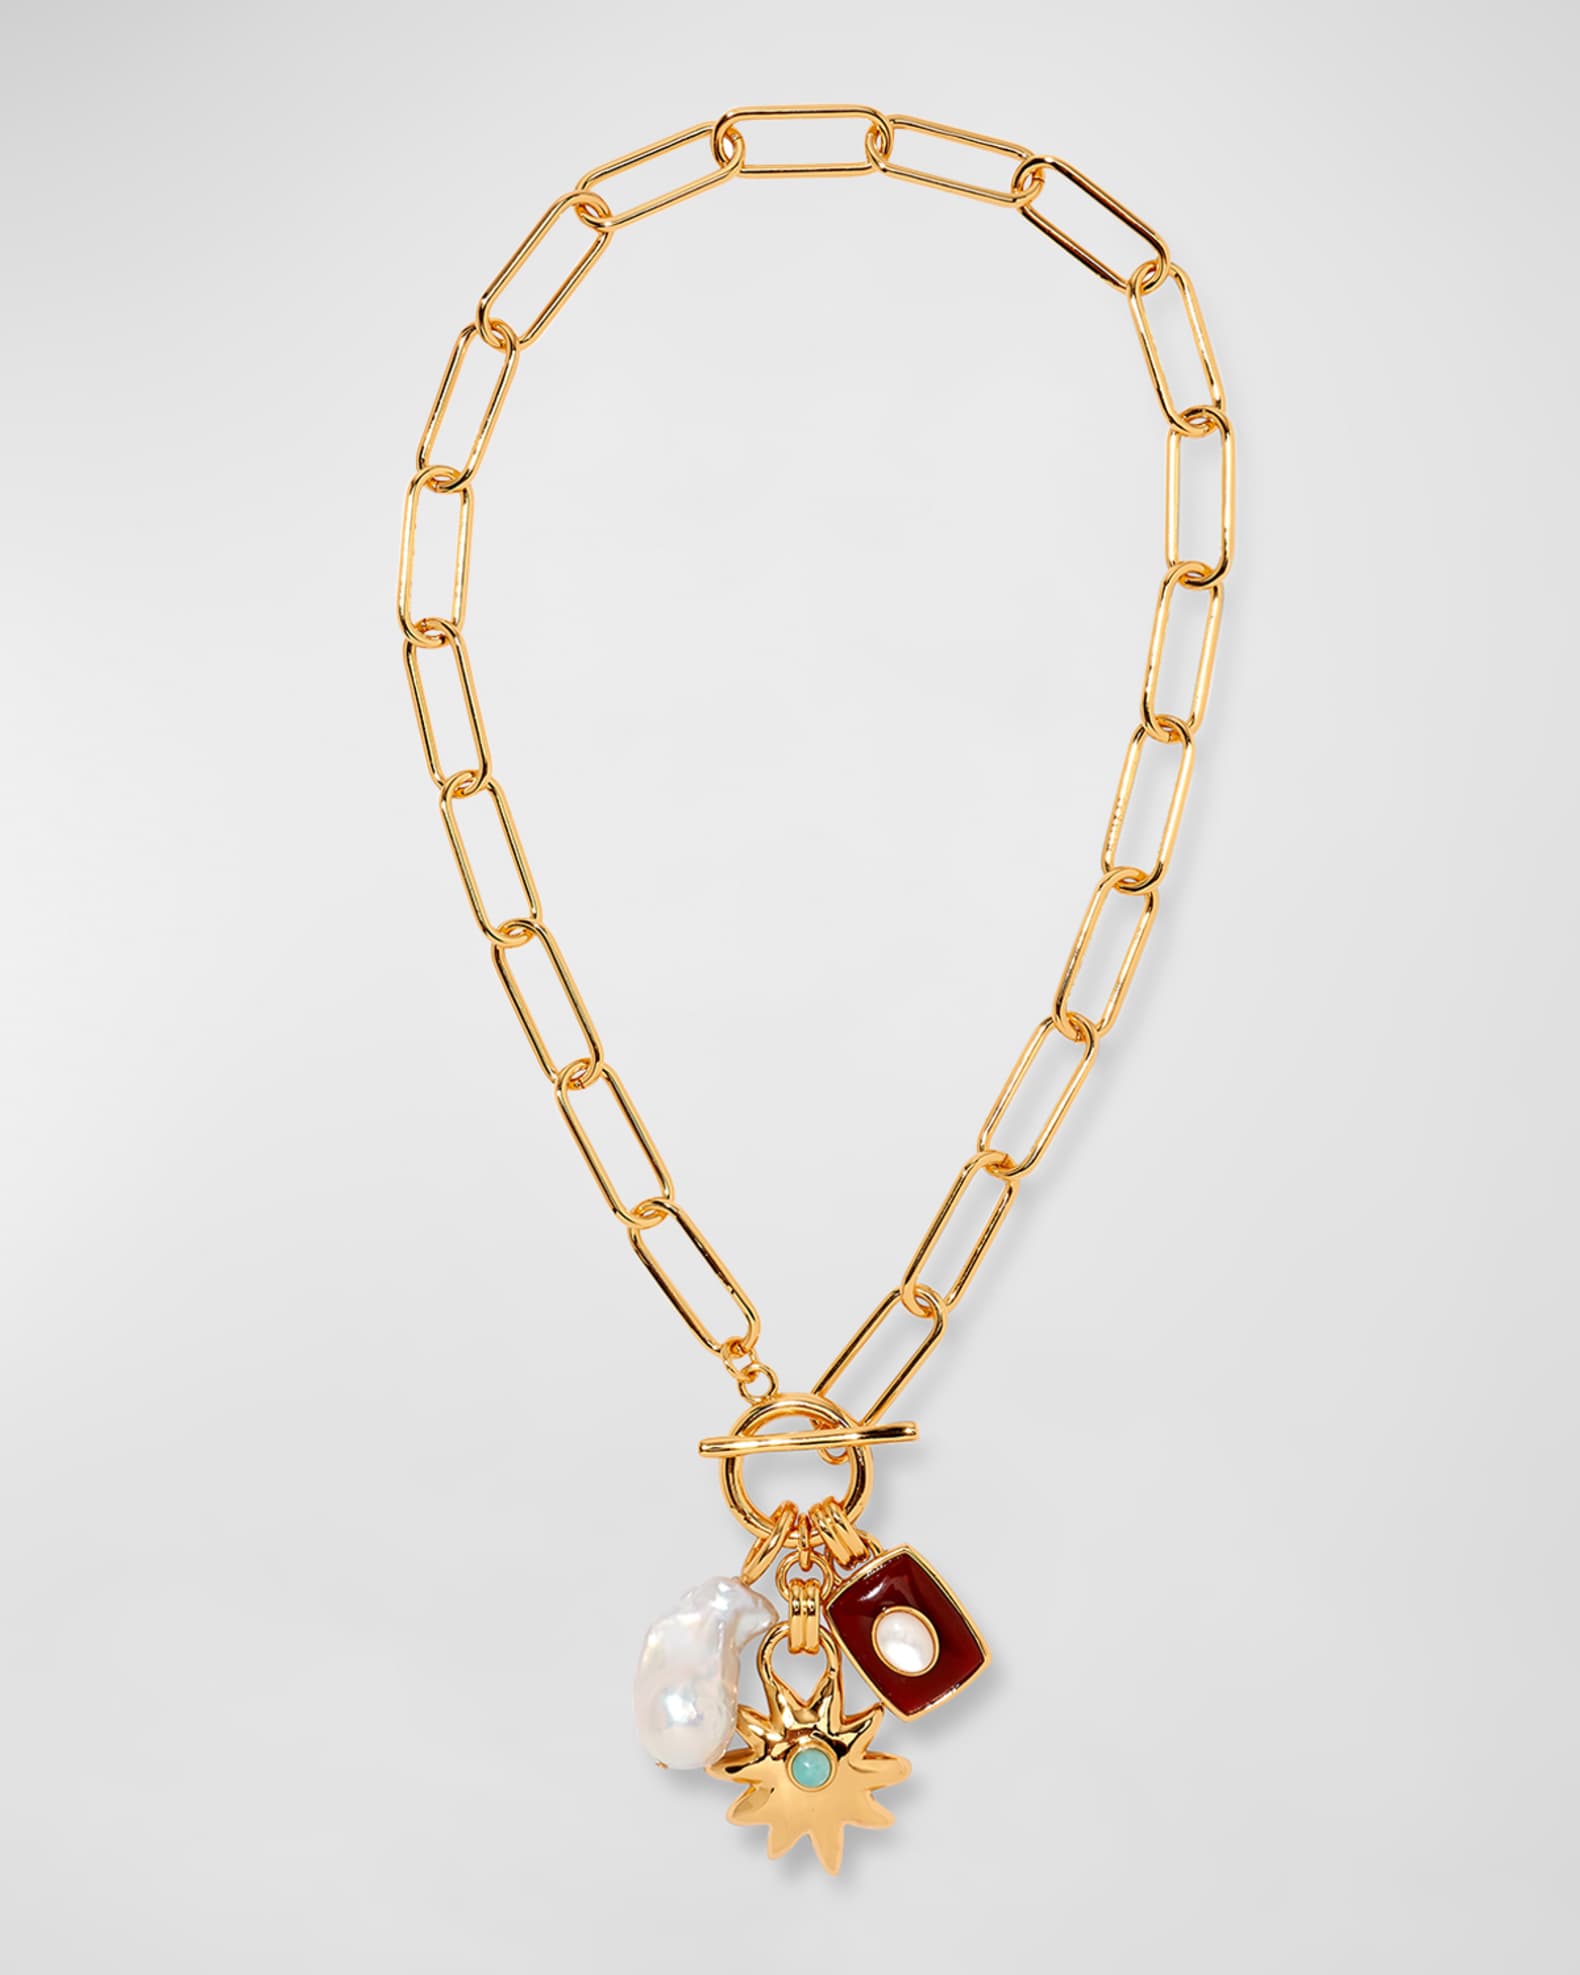 Louis Vuitton Alma Onyx Charm Yellow Gold [18K] Onyx Men,Women Fashion  Pendant Necklace [Gold]